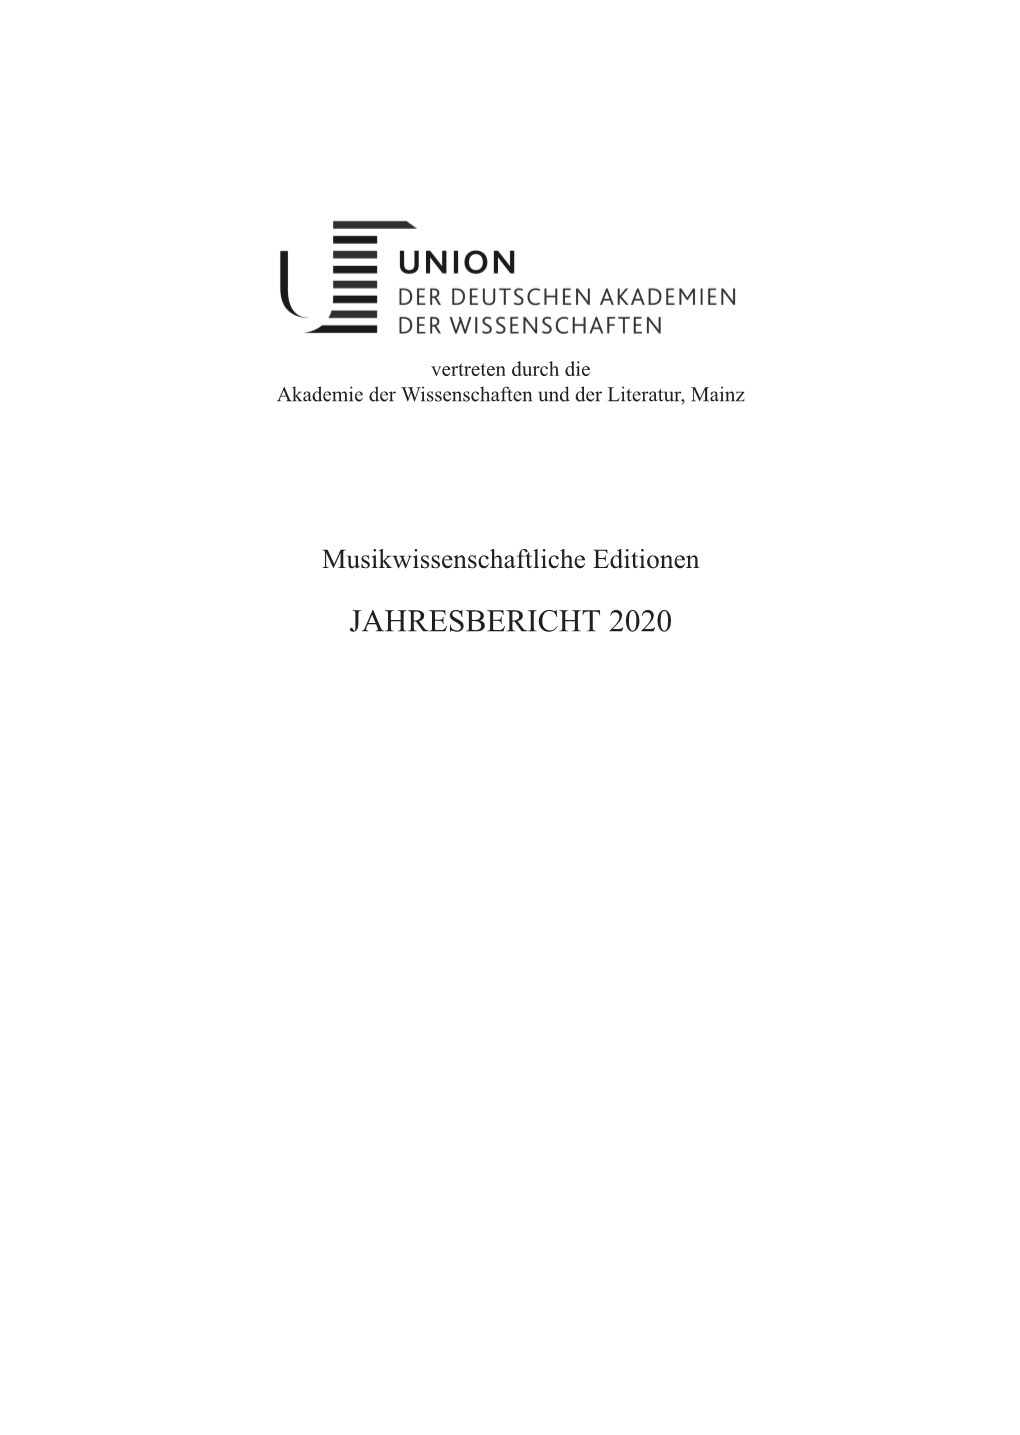 JAHRESBERICHT 2020 Koordinierung Der Musikwissenschaftlichen Editionen: Dr